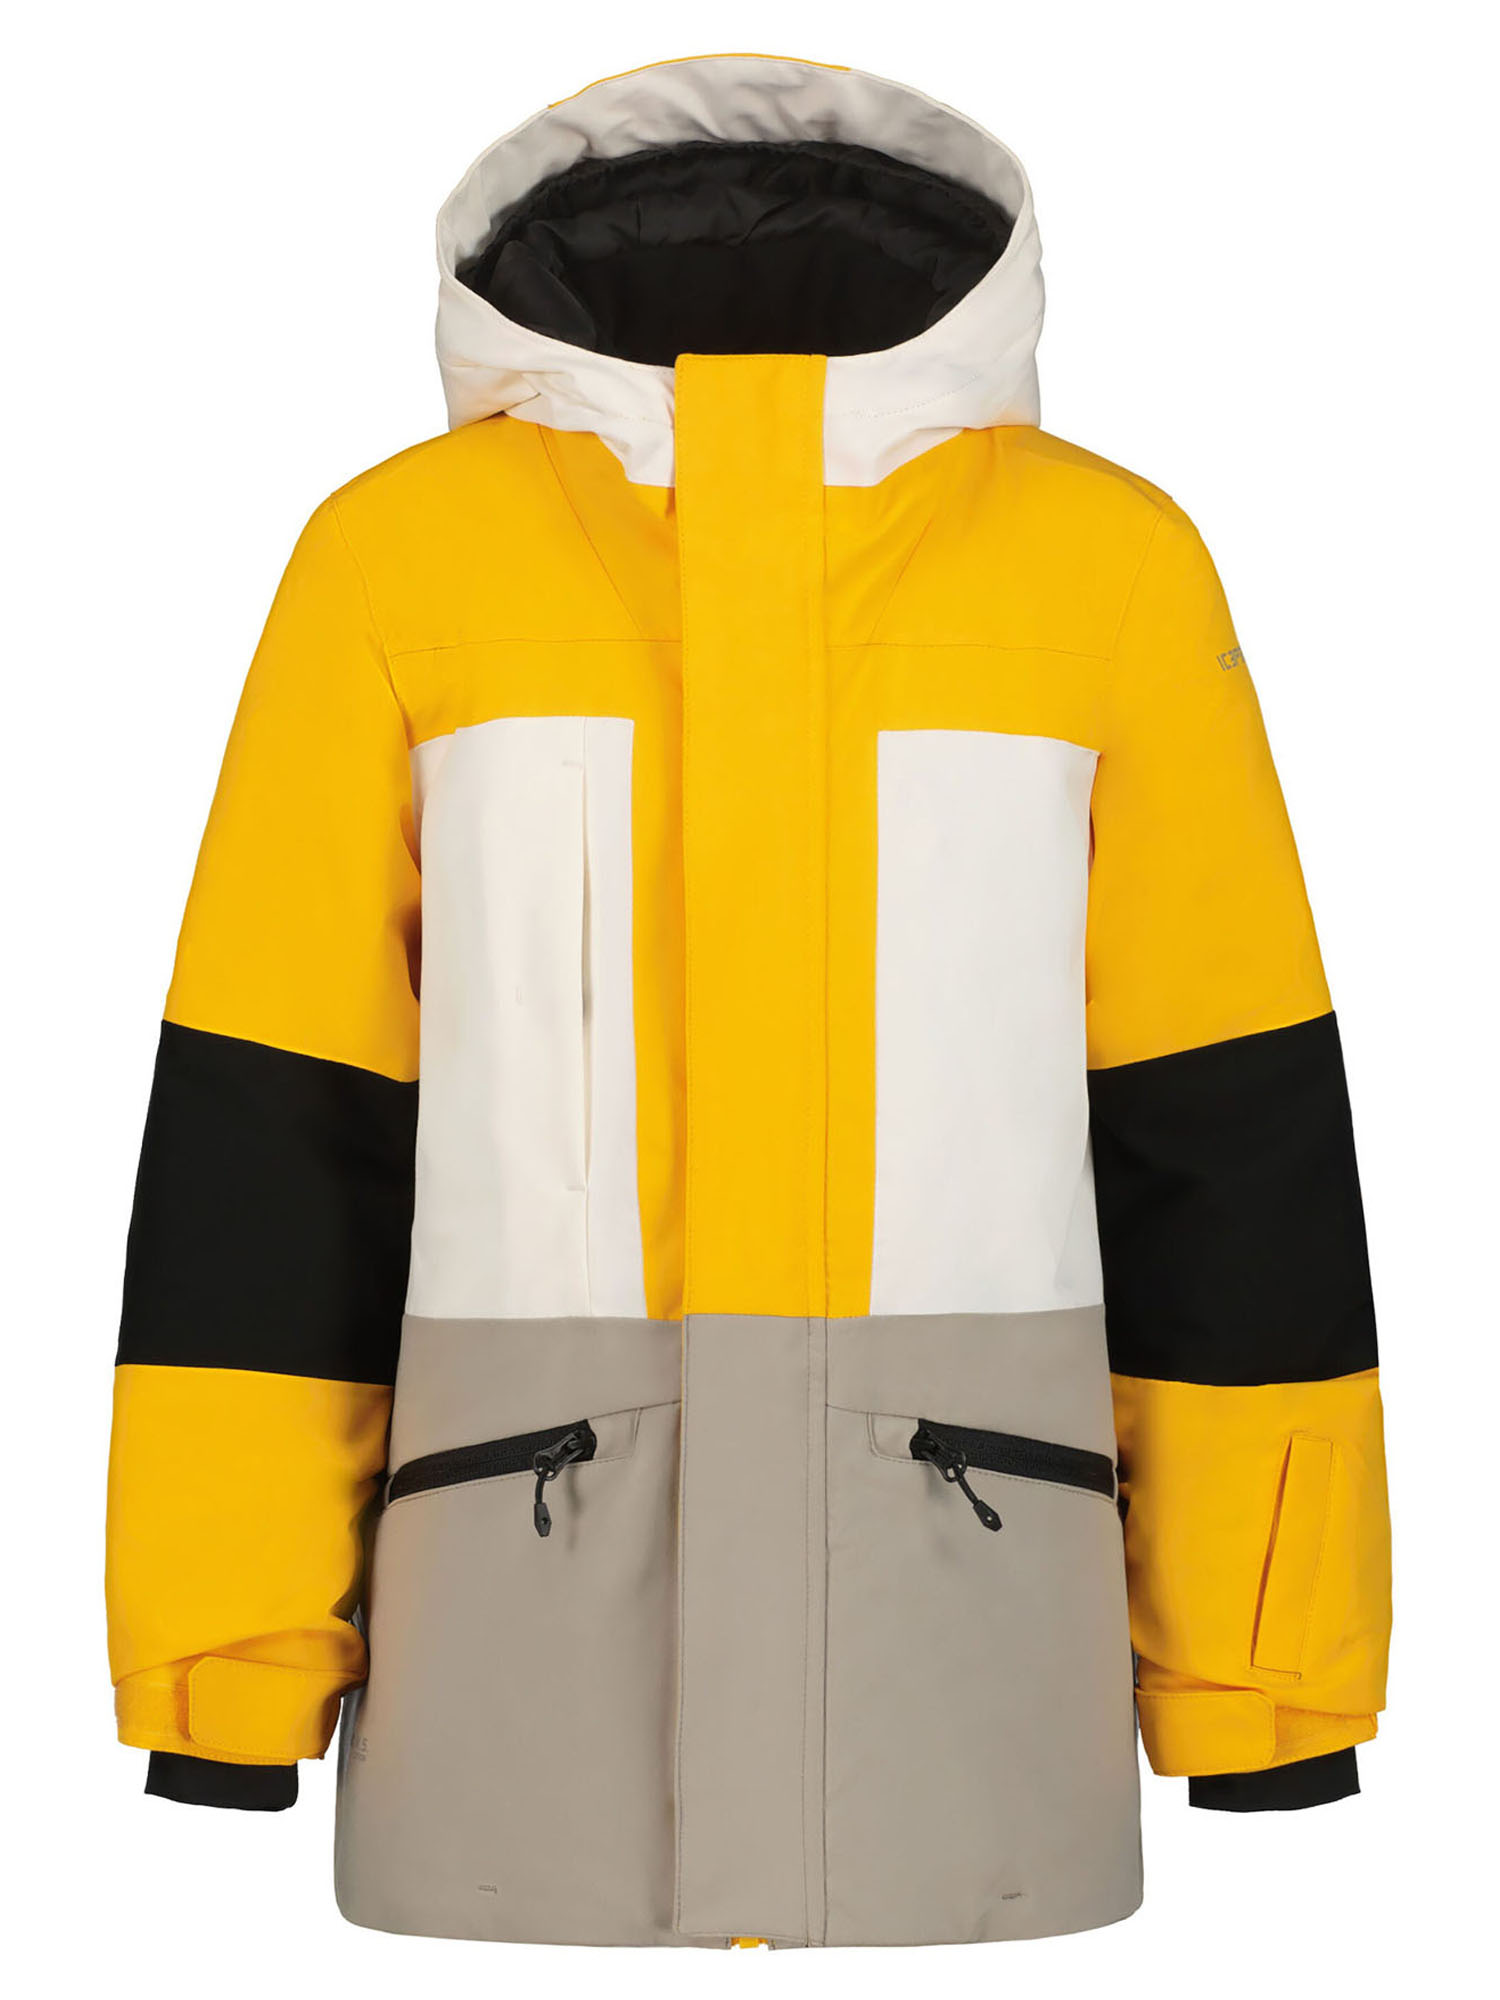 Куртка IcePeak 50039_437, бежевый - белый - желтый, 140 куртка утепленная женская icepeak clover синий